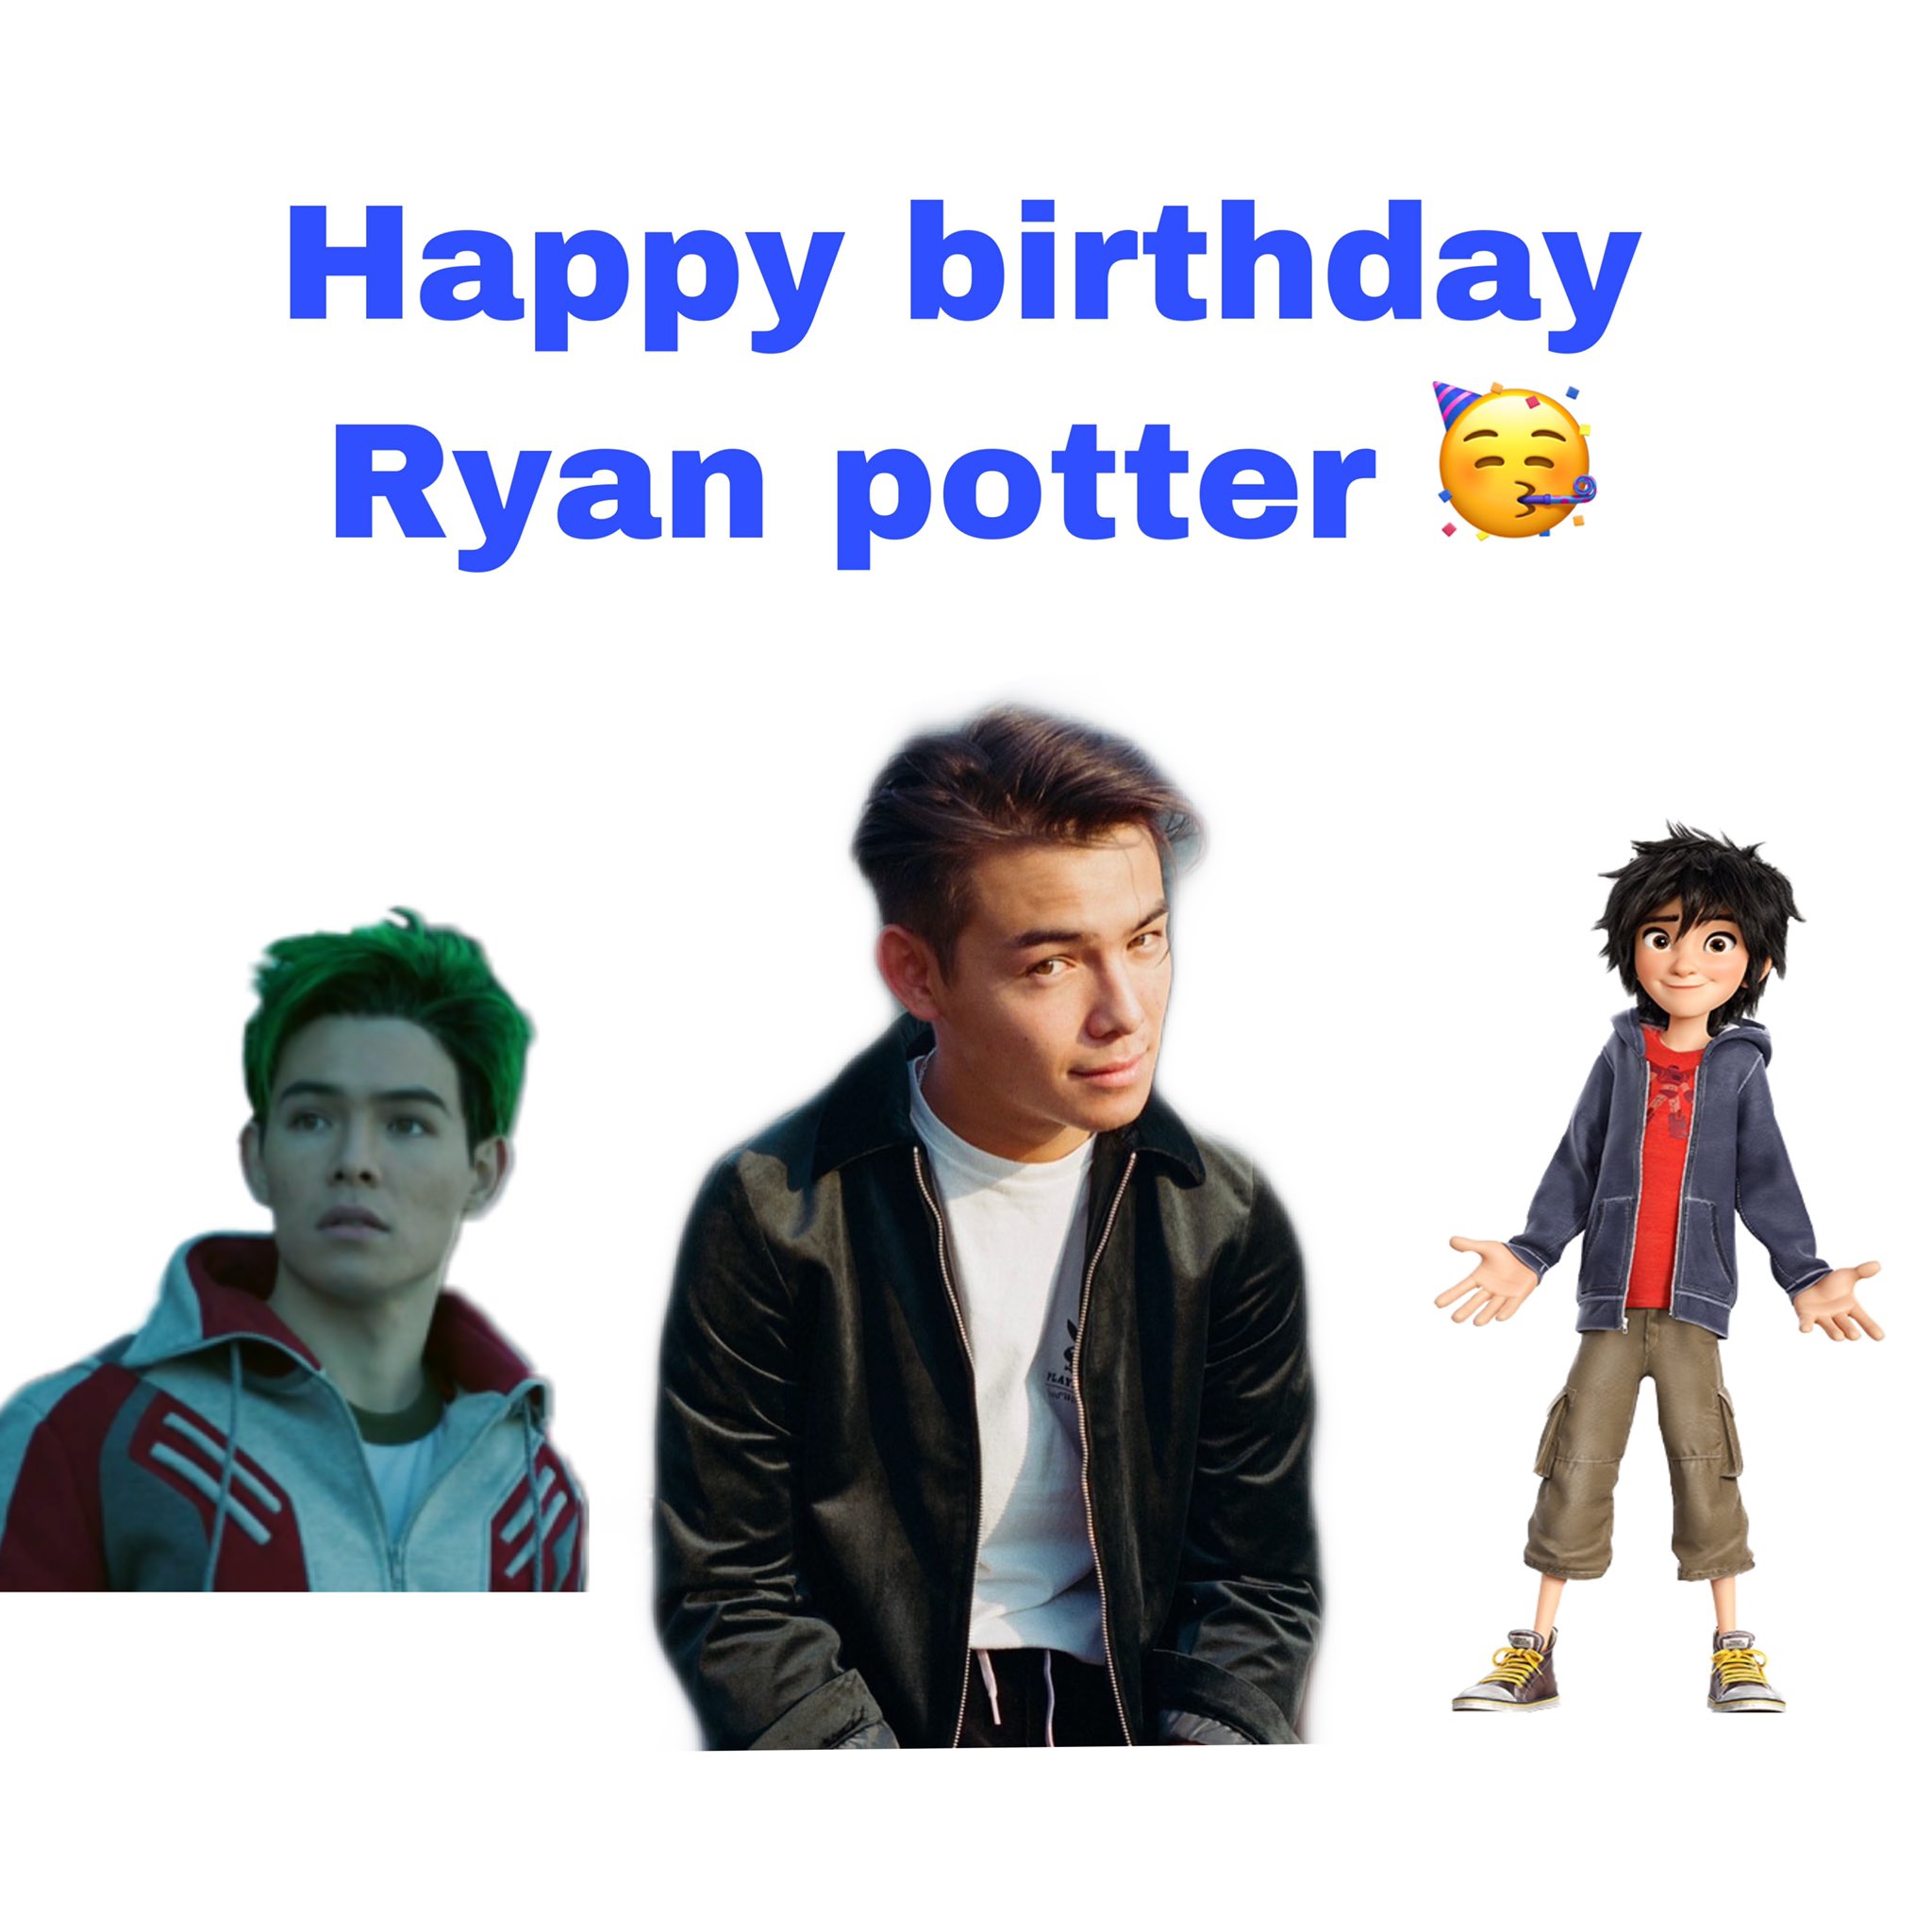 Happy birthday Ryan potter!      